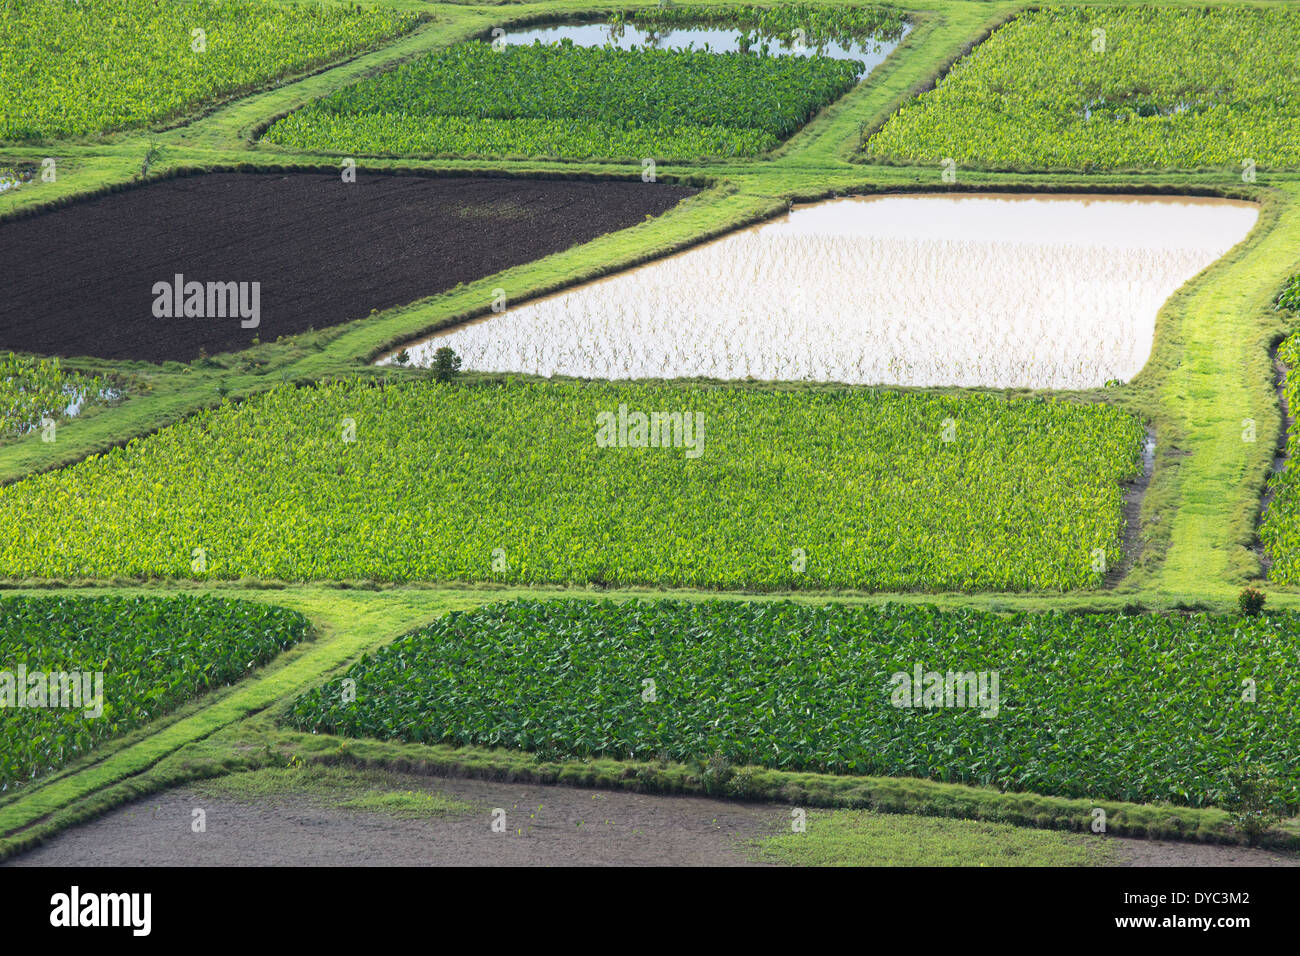 Campi coltivati a Taro in vari stadi di crescita nella Valle Hanalei, Kauai, Hawaii (Colocasia esculenta) Foto Stock